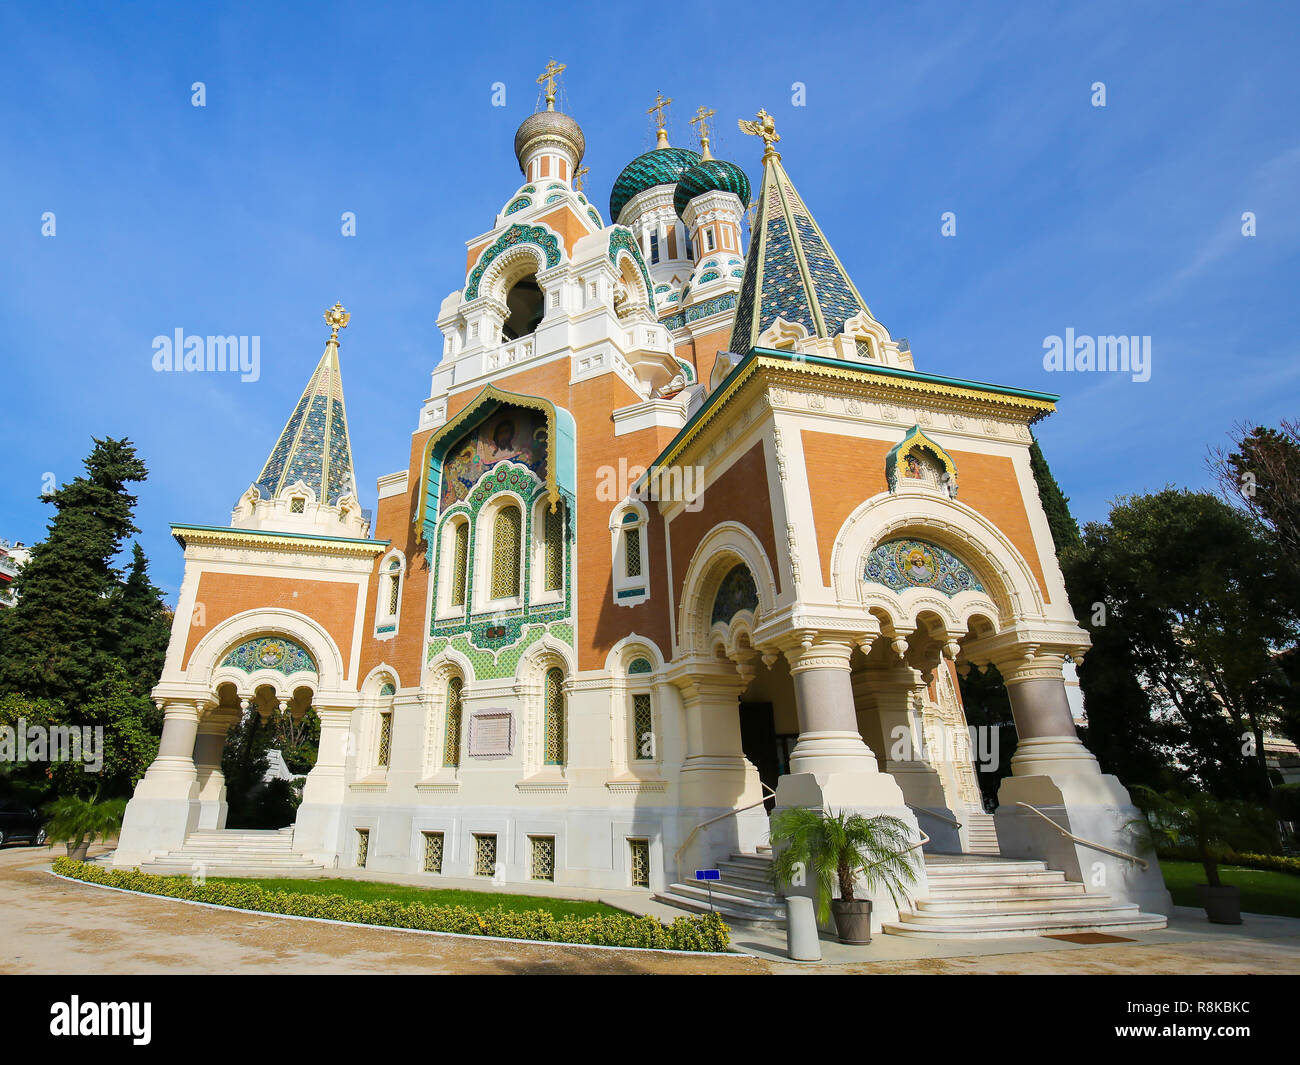 La chiesa russo-ortodossa Cattedrale di San Nicola a Nizza, in Francia, il più grande orientale Cattedrale Ortodossa in Europa occidentale. Foto Stock